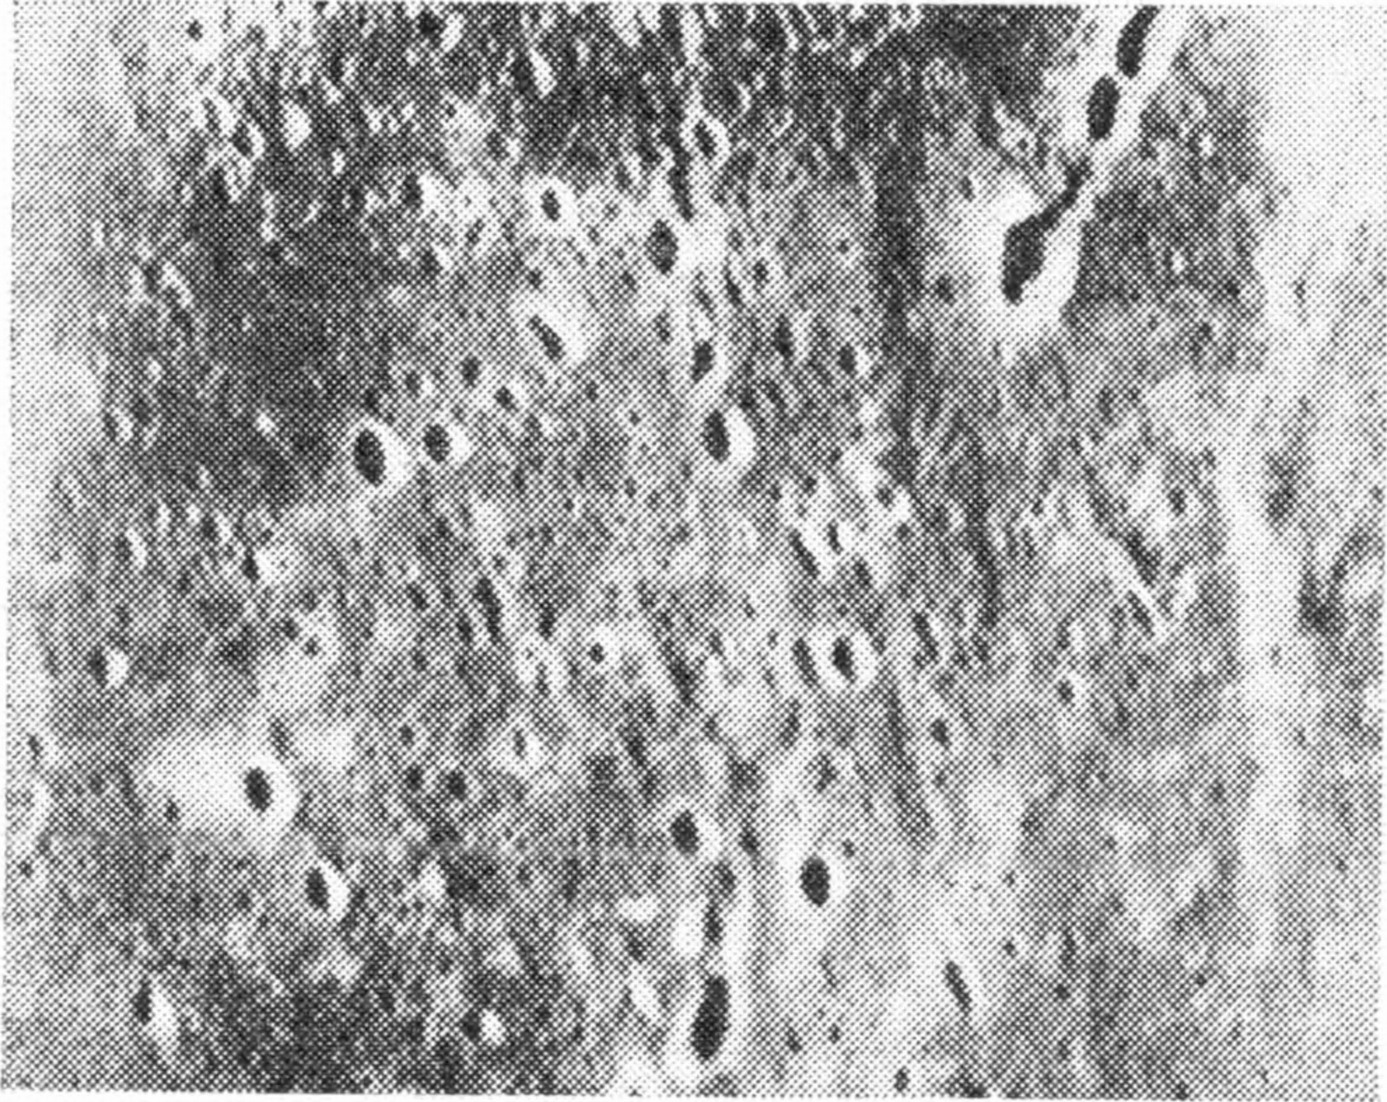 Рис. 45. «Ровные площади» на Меркурии. Стороны этого прямо угольника составляют всего около 40 км